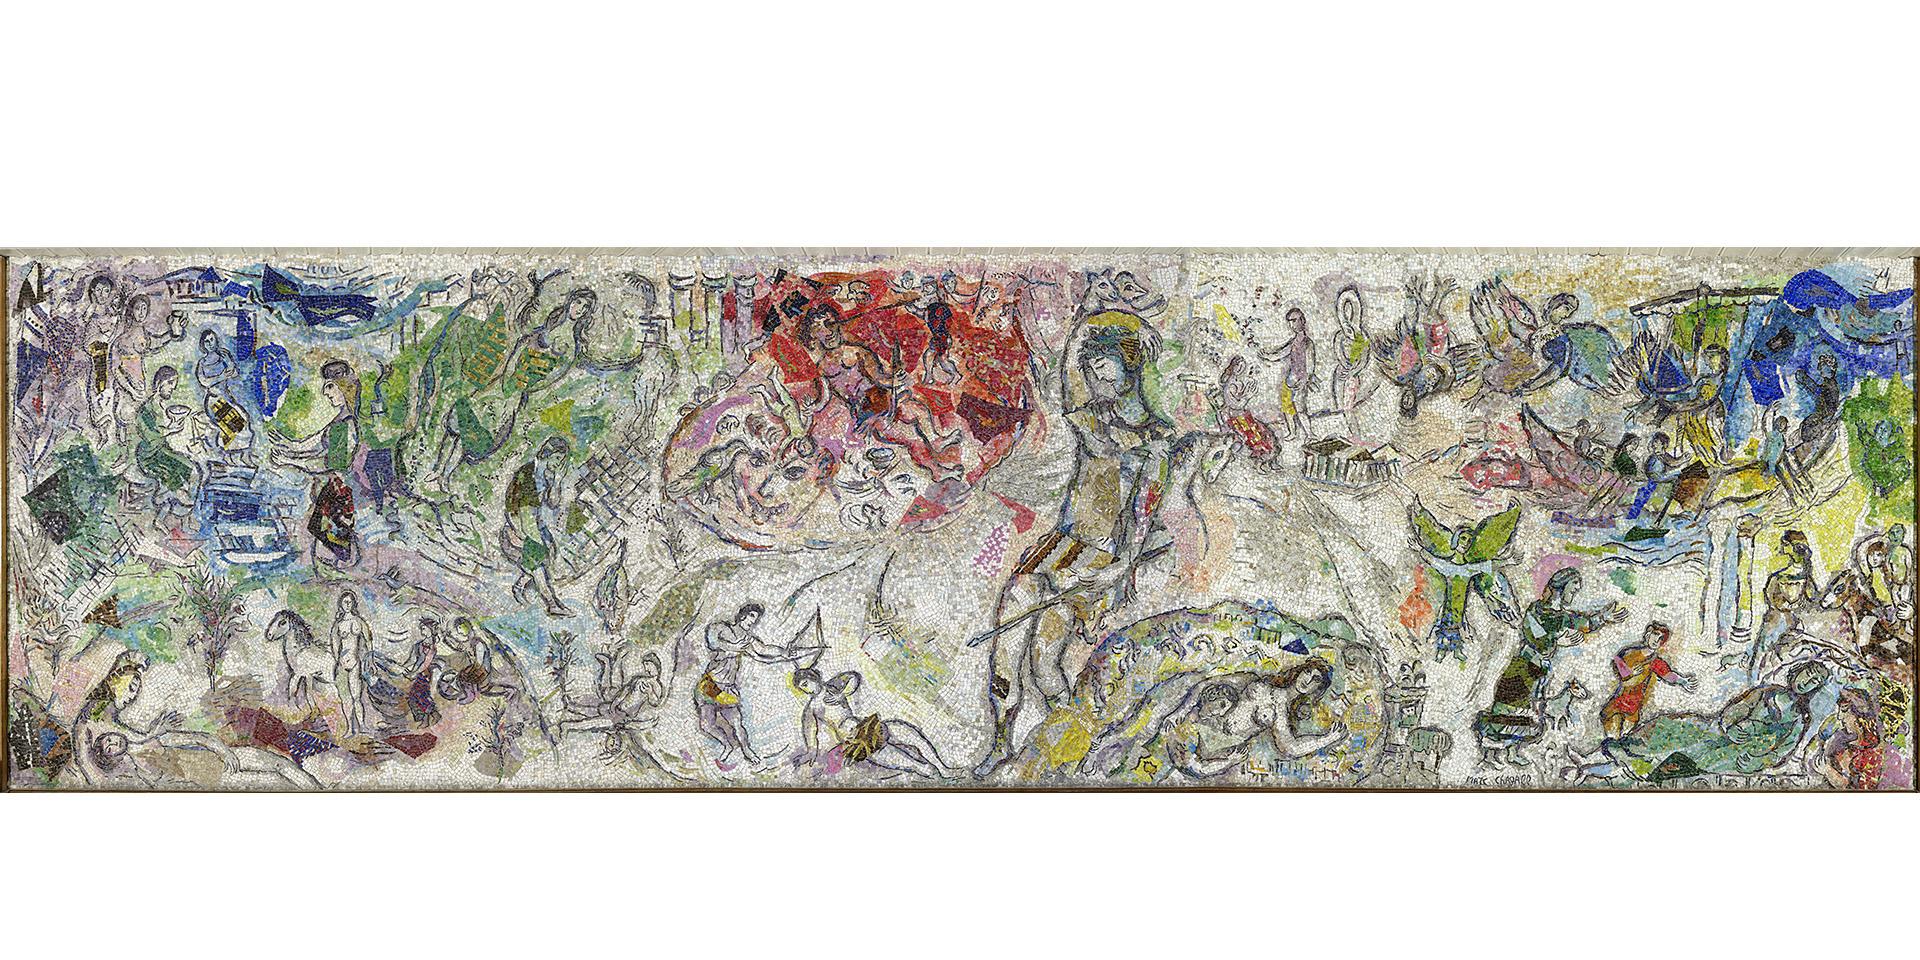 Marc Chagall, "Le Message d’Ulysse", mosaïque, 1968, 3m x 11m, Faculté de Droit et Science politique, Nice. Photo: François Fernandez © Adagp, Paris, 2021.